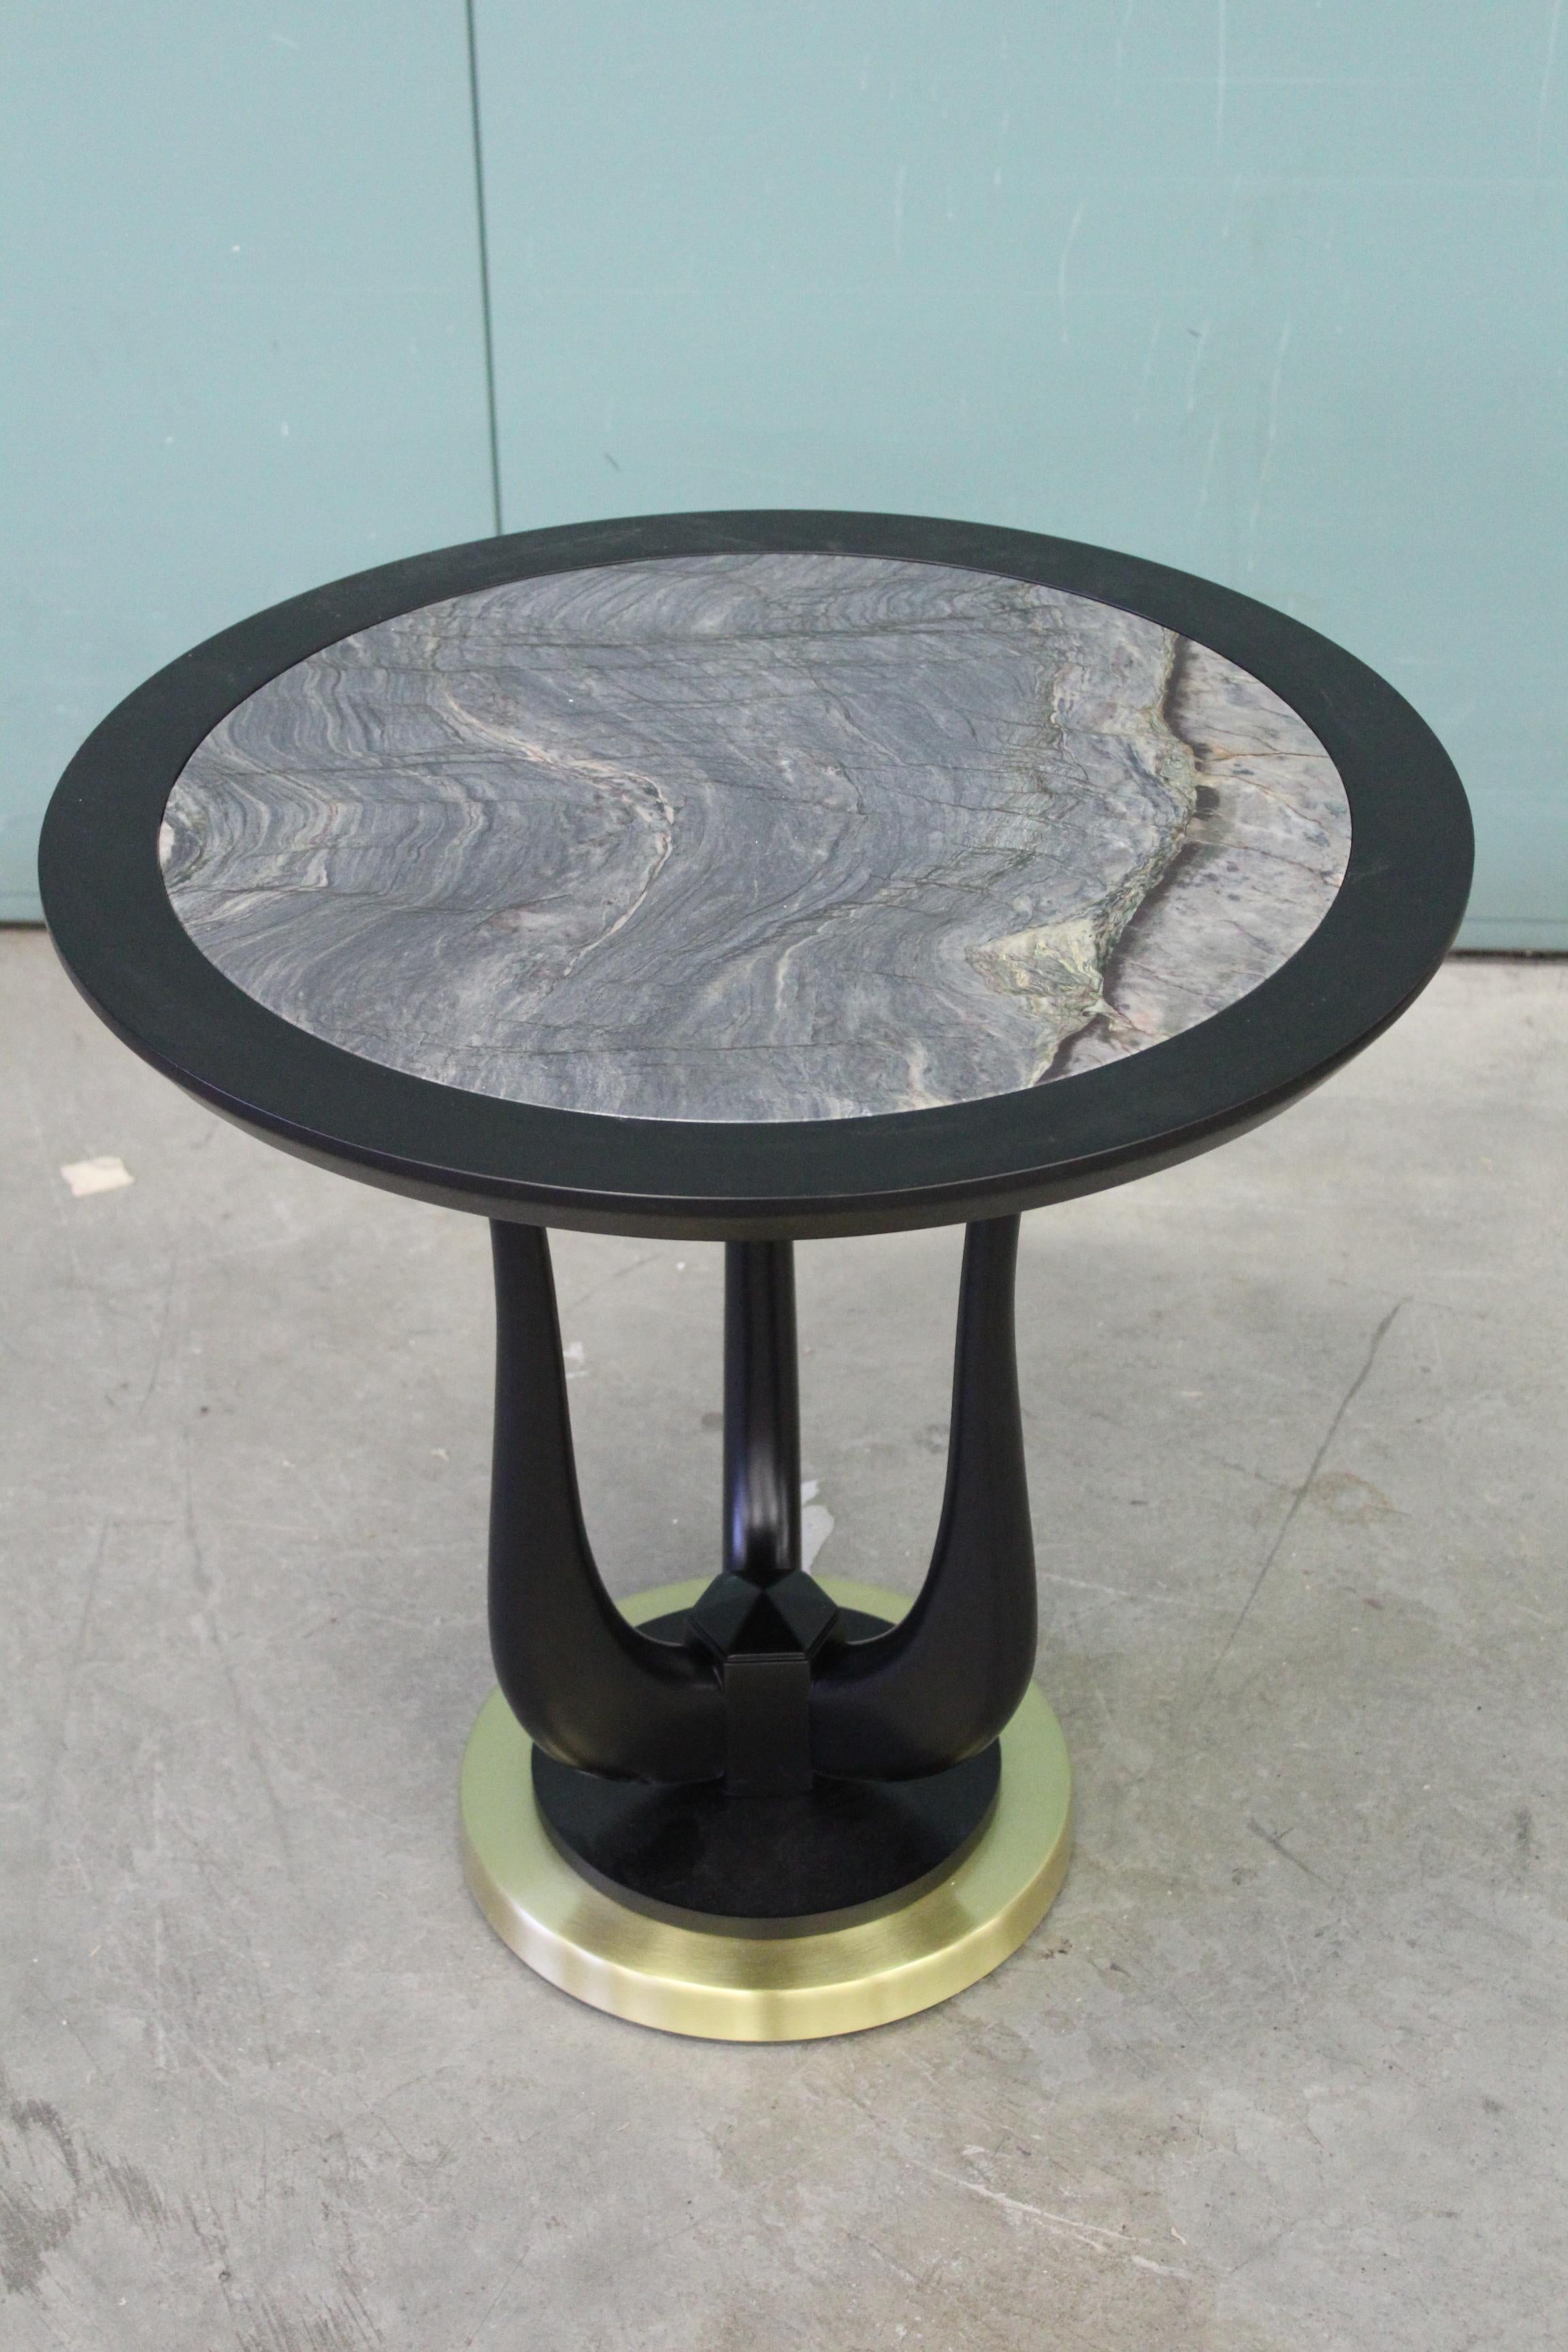 Poseidon Black Side Table in Matt Black Lacquered Finish and Blue Marble Top In New Condition For Sale In Lentate sul Seveso, Monza e Brianza